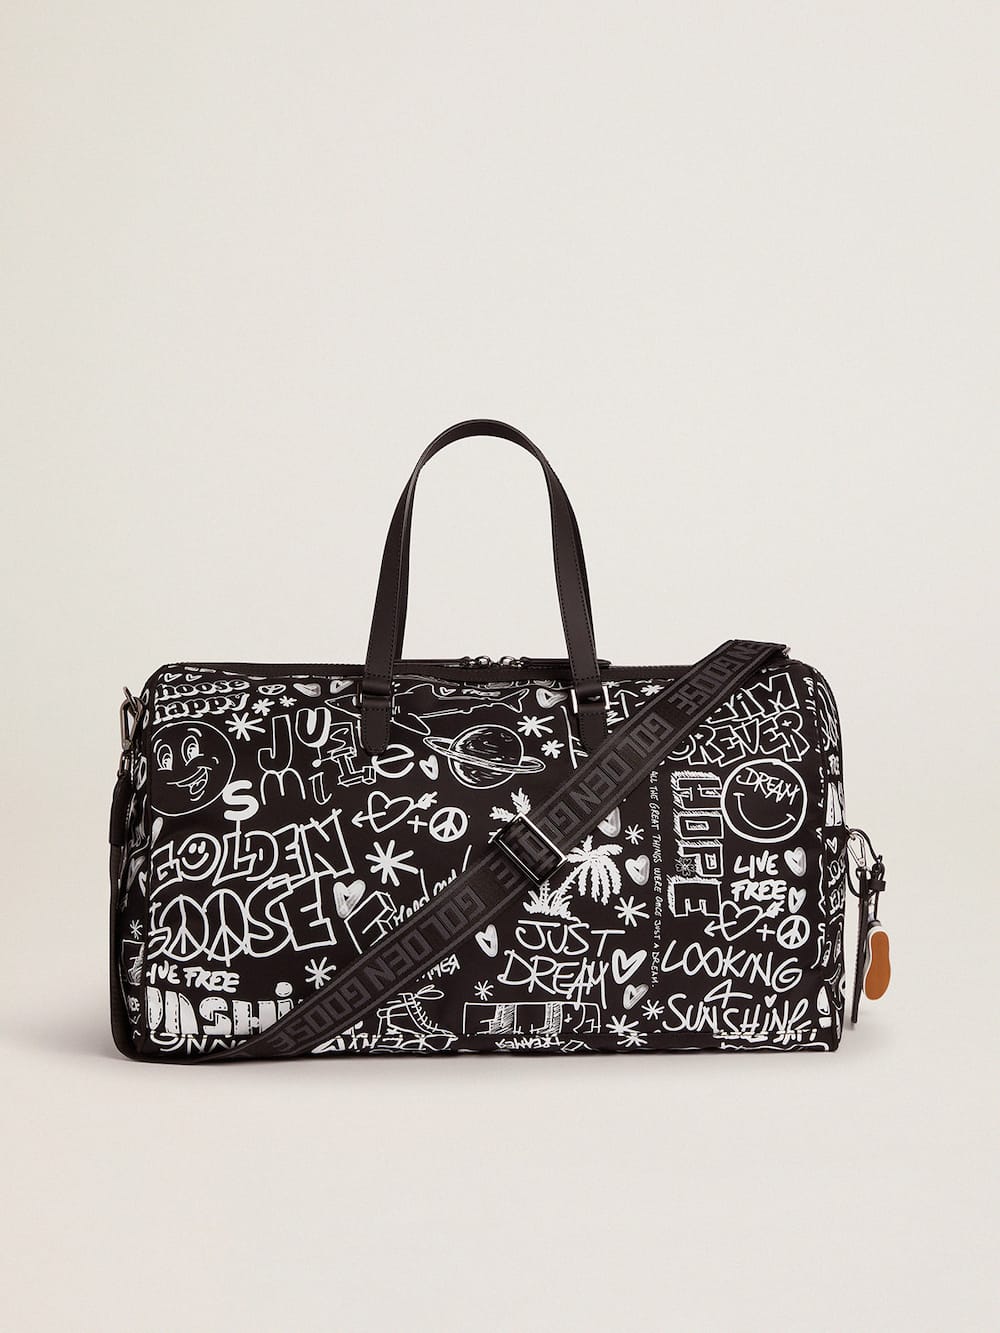 Golden Goose - Journey Duffle Bag de nailon negro con decoraciones blancas en contraste in 